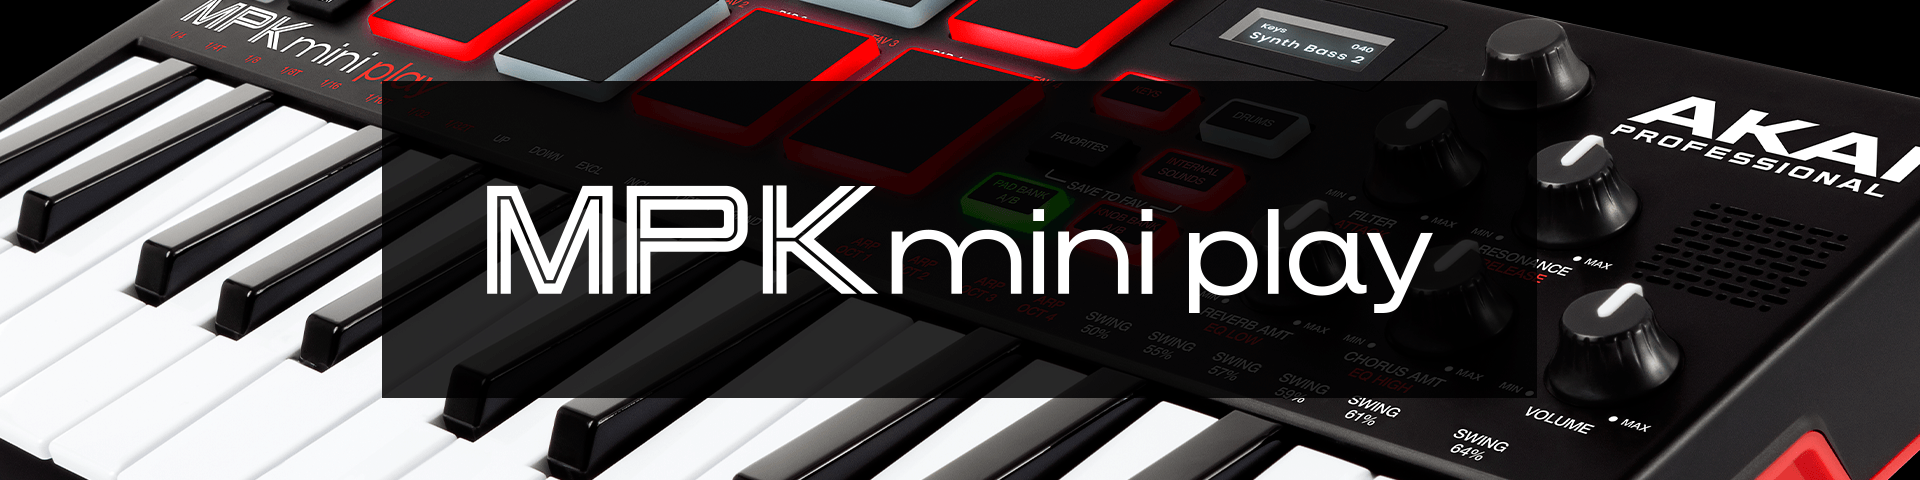 Controlador Midi Akai Mpk Mini Play Mk3 — Palacio de la Música